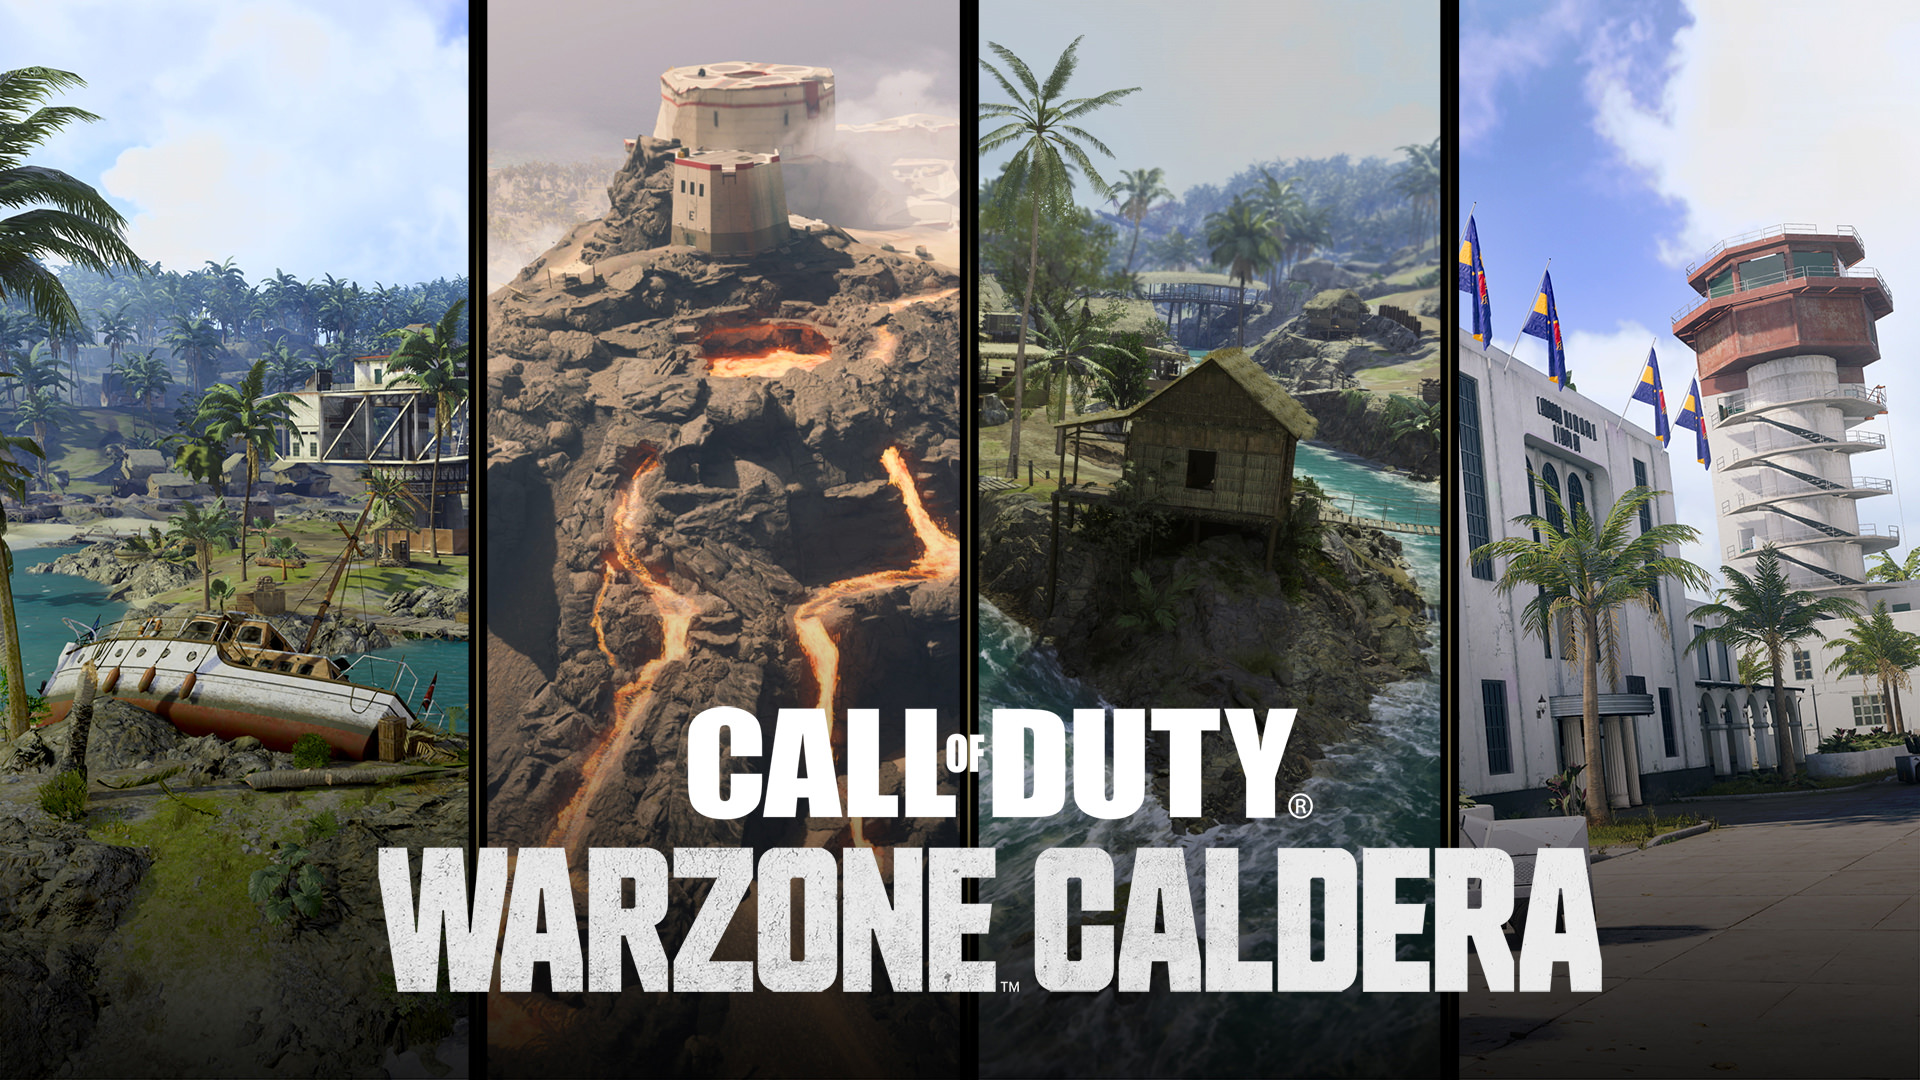 عرضه مجدد بازی وارزون با اسم جدید Warzone Caldera